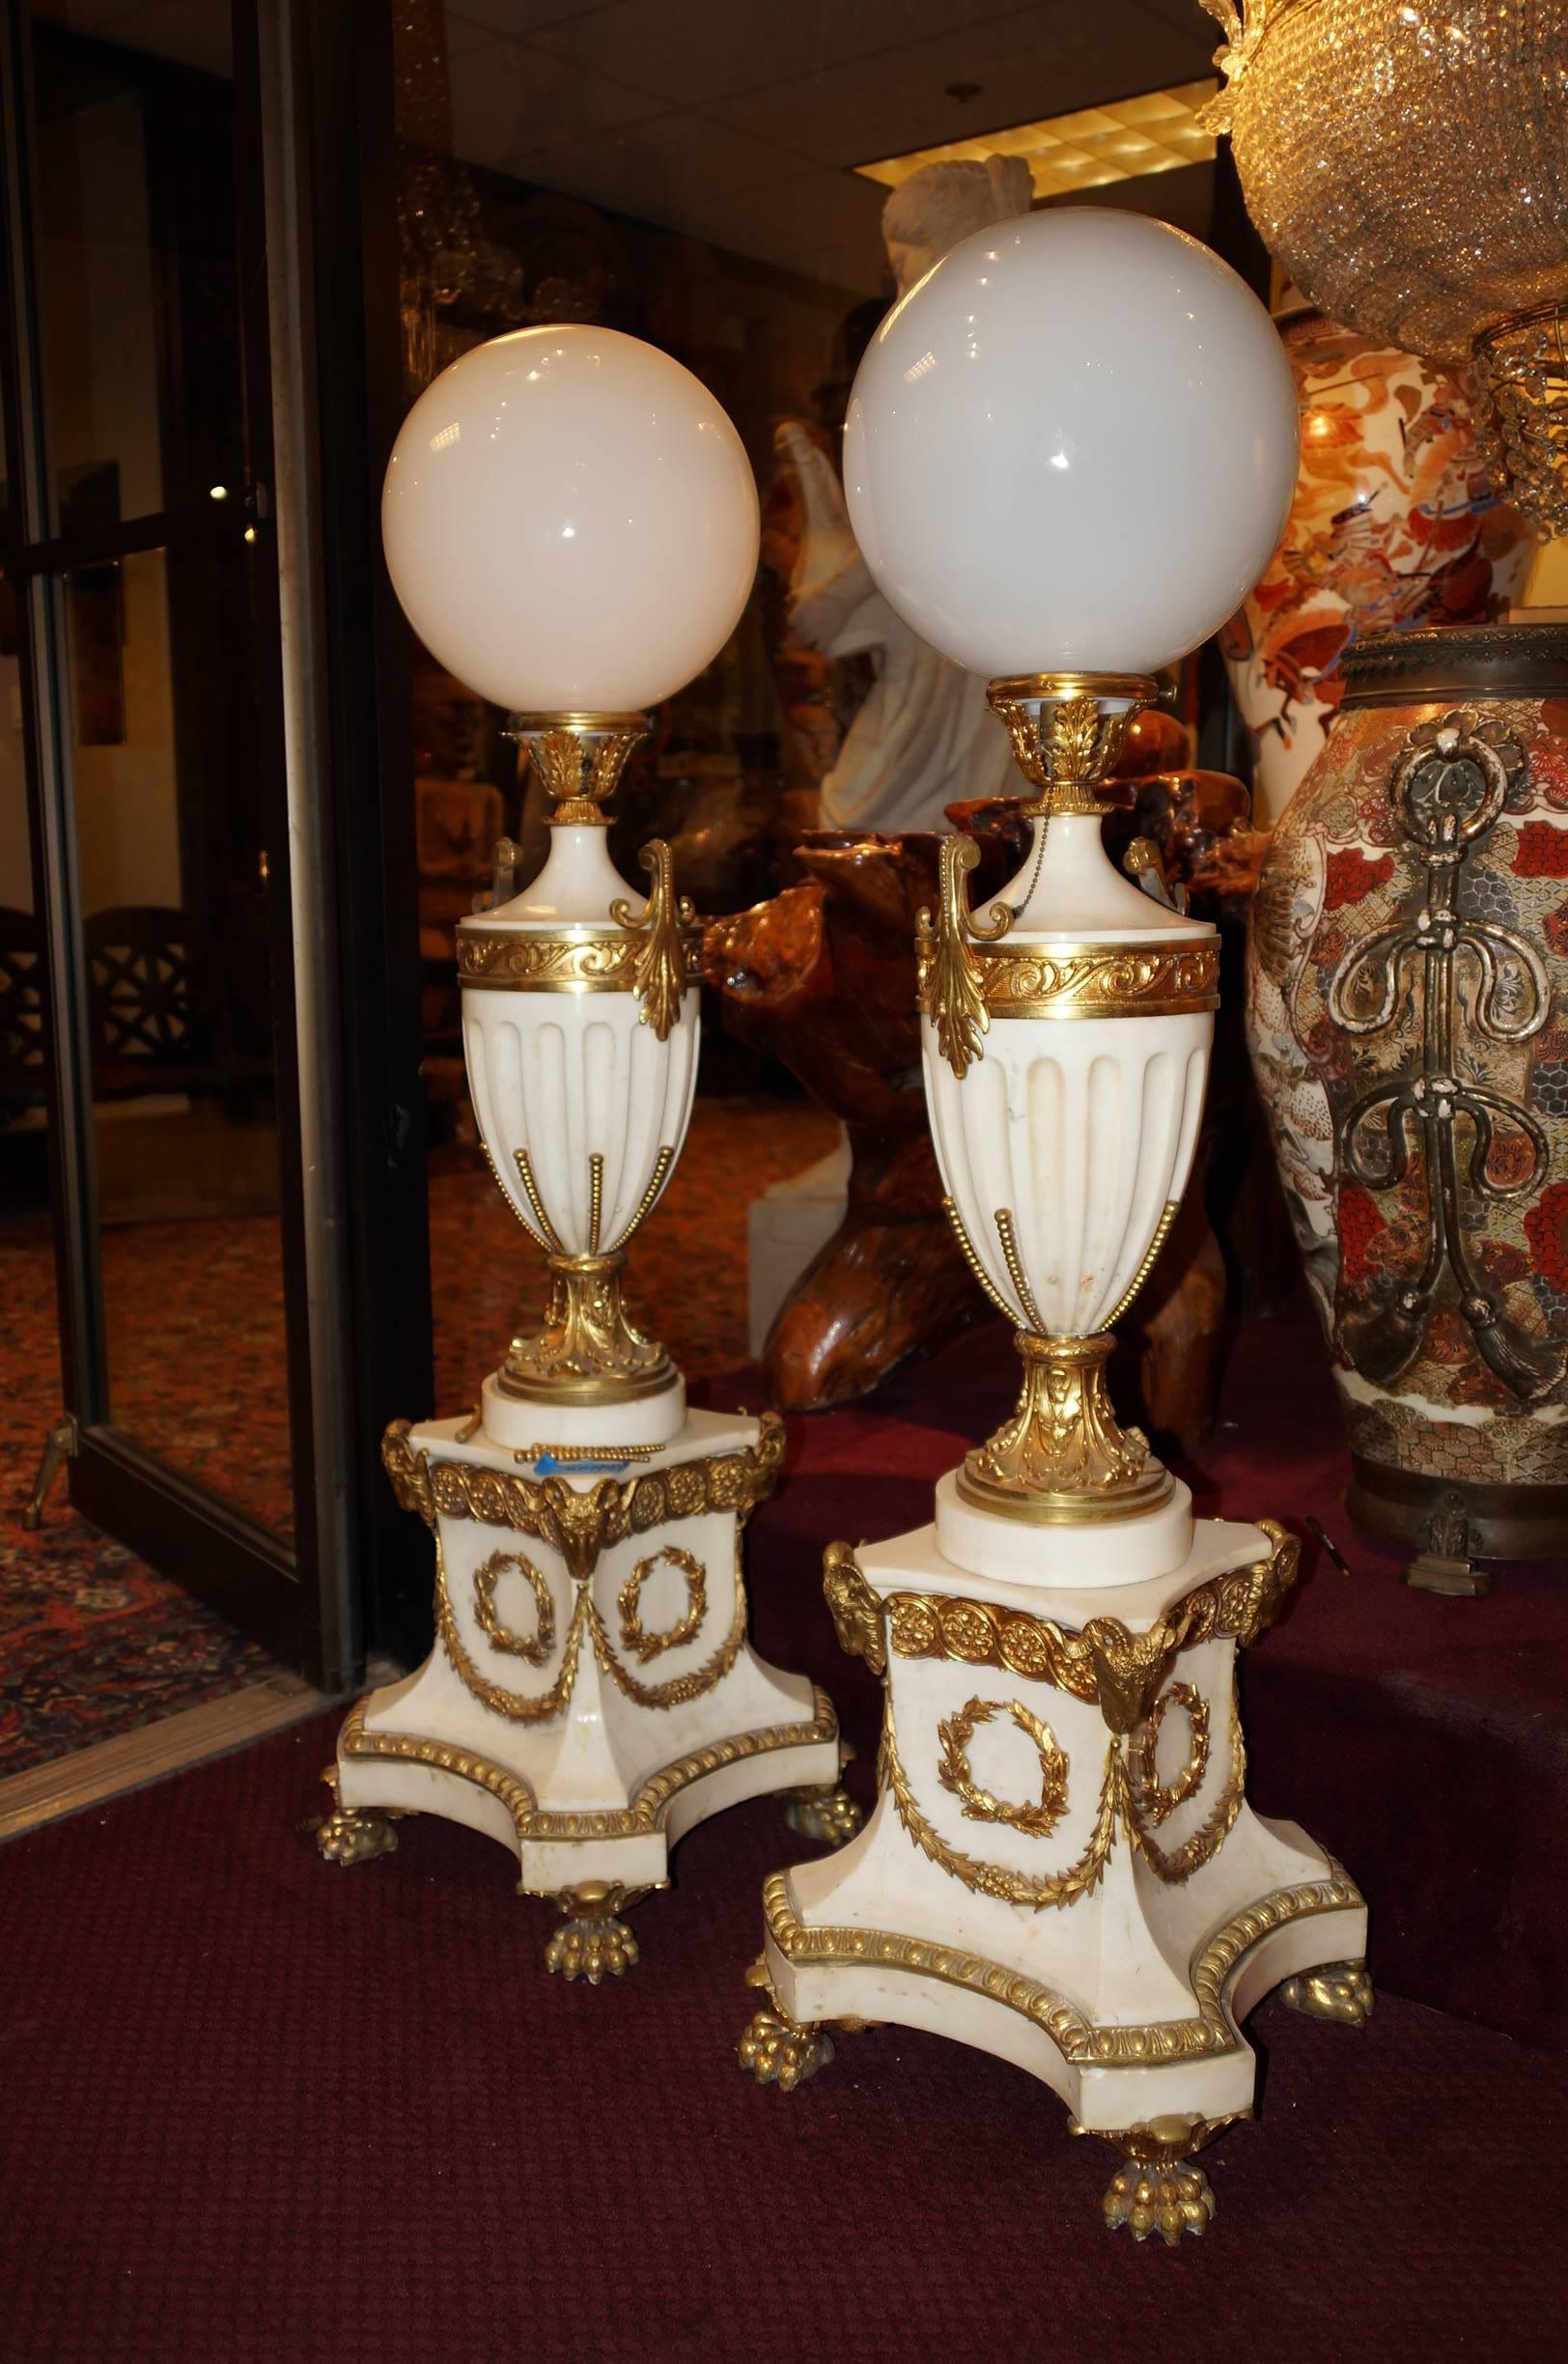 Paire de lampadaires torchères en marbre blanc et bronze de style Louis XVI à tête de bélier et pieds en patte d'oie.
Numéro de stock : LL38